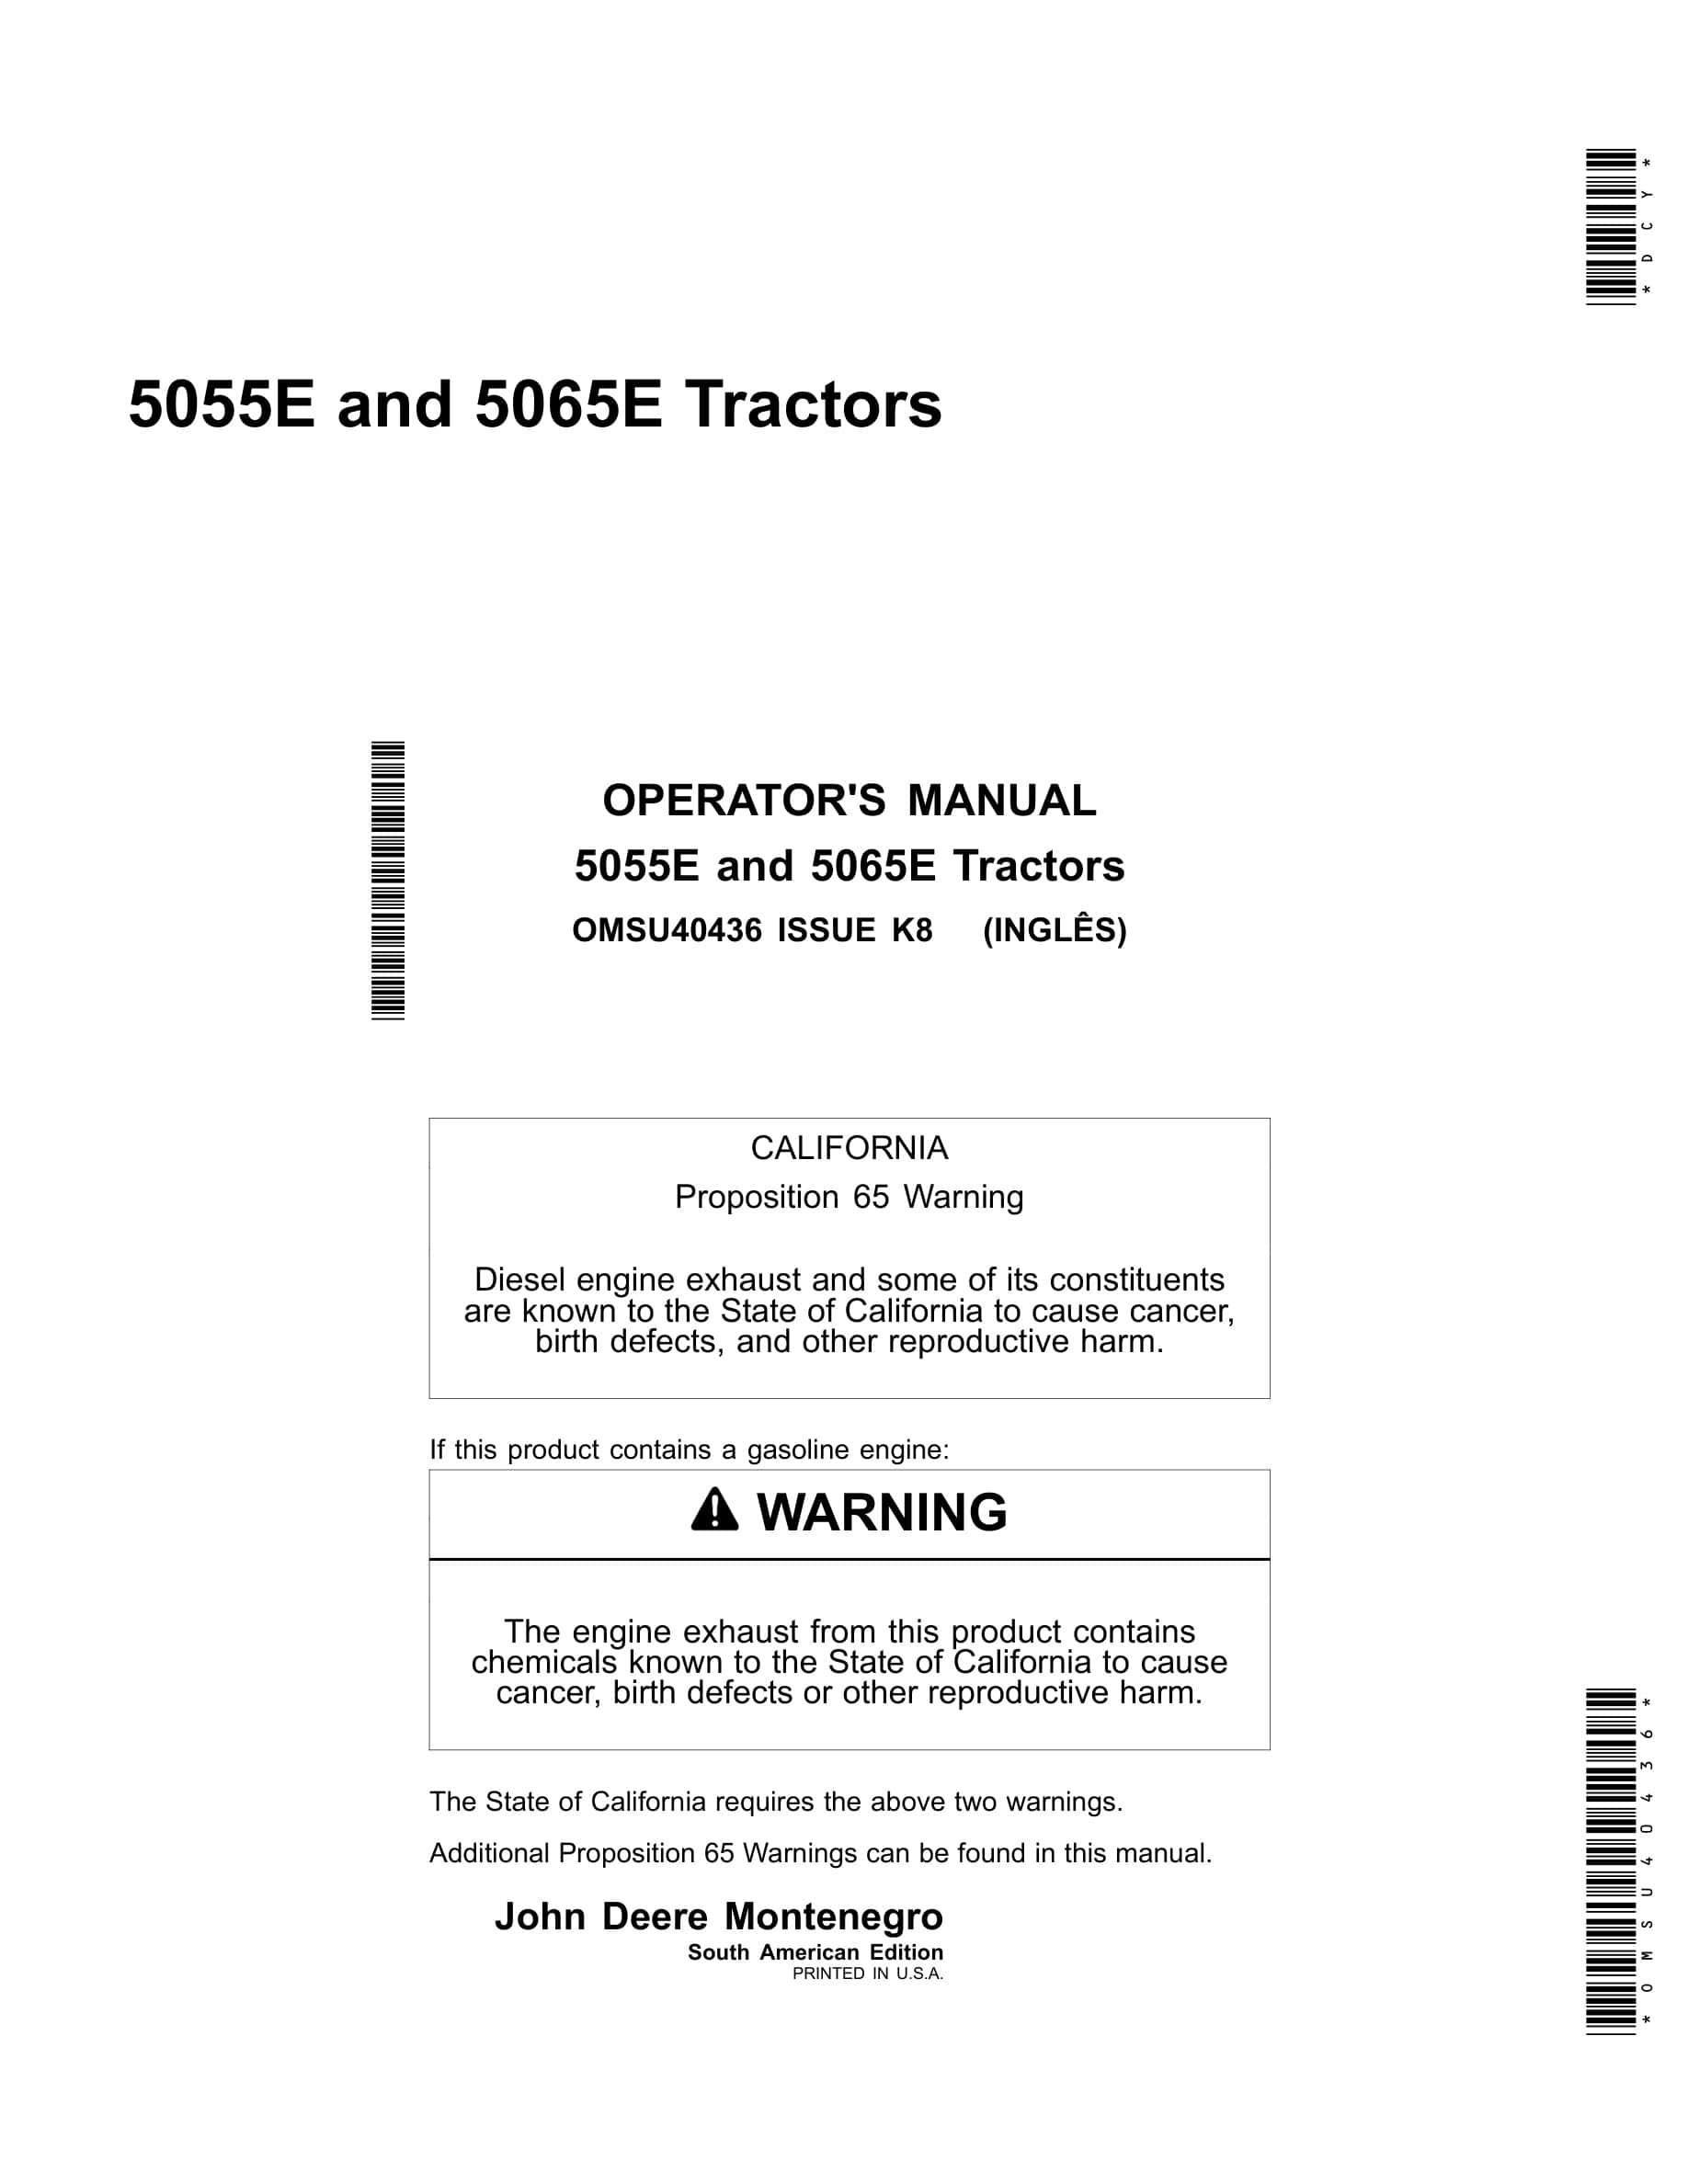 John Deere 5055e And 5065e Tractors Operator Manuals OMSU40436-1